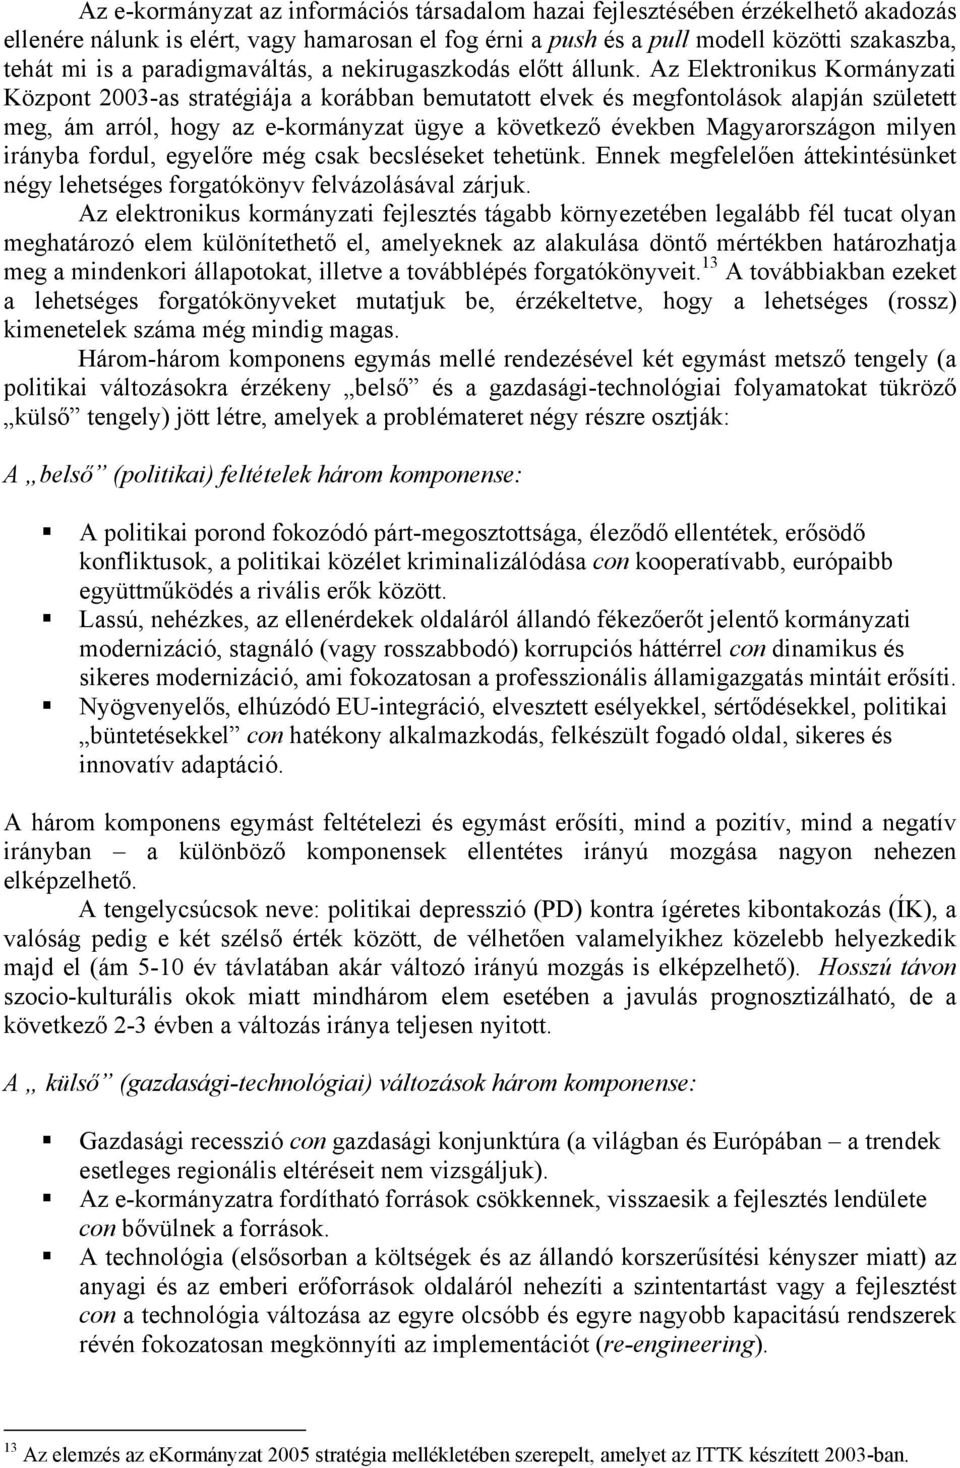 Az Elektronikus Kormányzati Központ 2003-as stratégiája a korábban bemutatott elvek és megfontolások alapján született meg, ám arról, hogy az e-kormányzat ügye a következő években Magyarországon